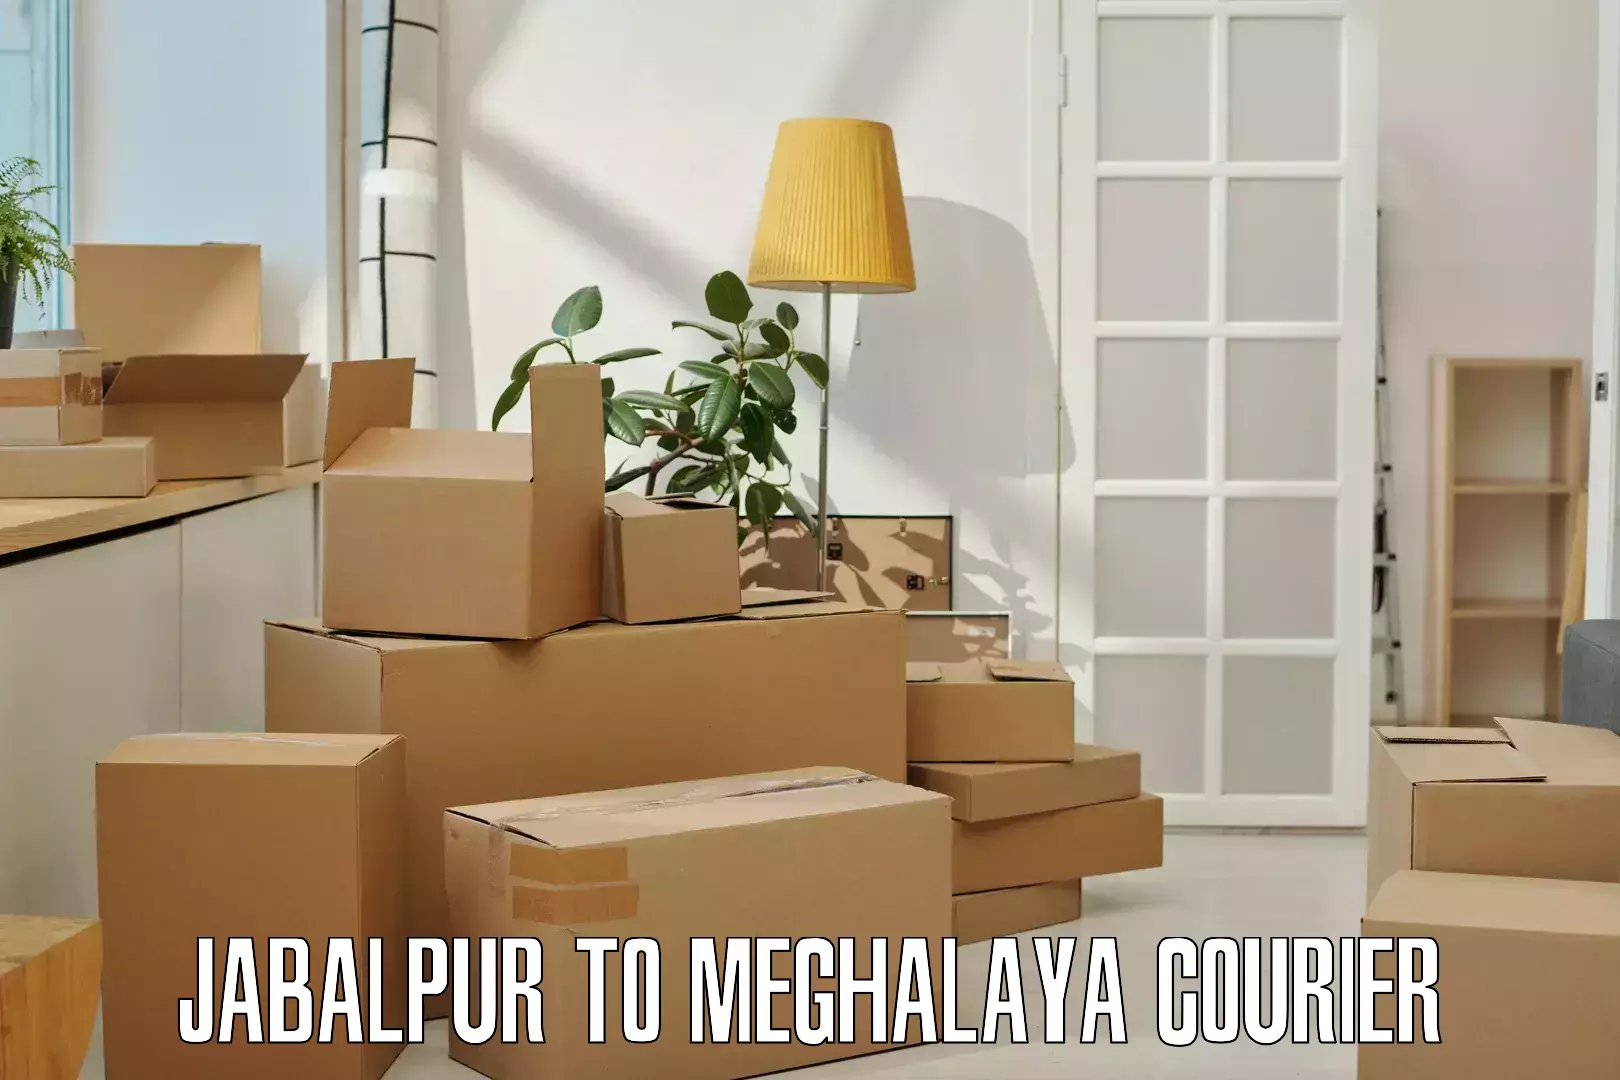 Courier service comparison Jabalpur to Ri Bhoi